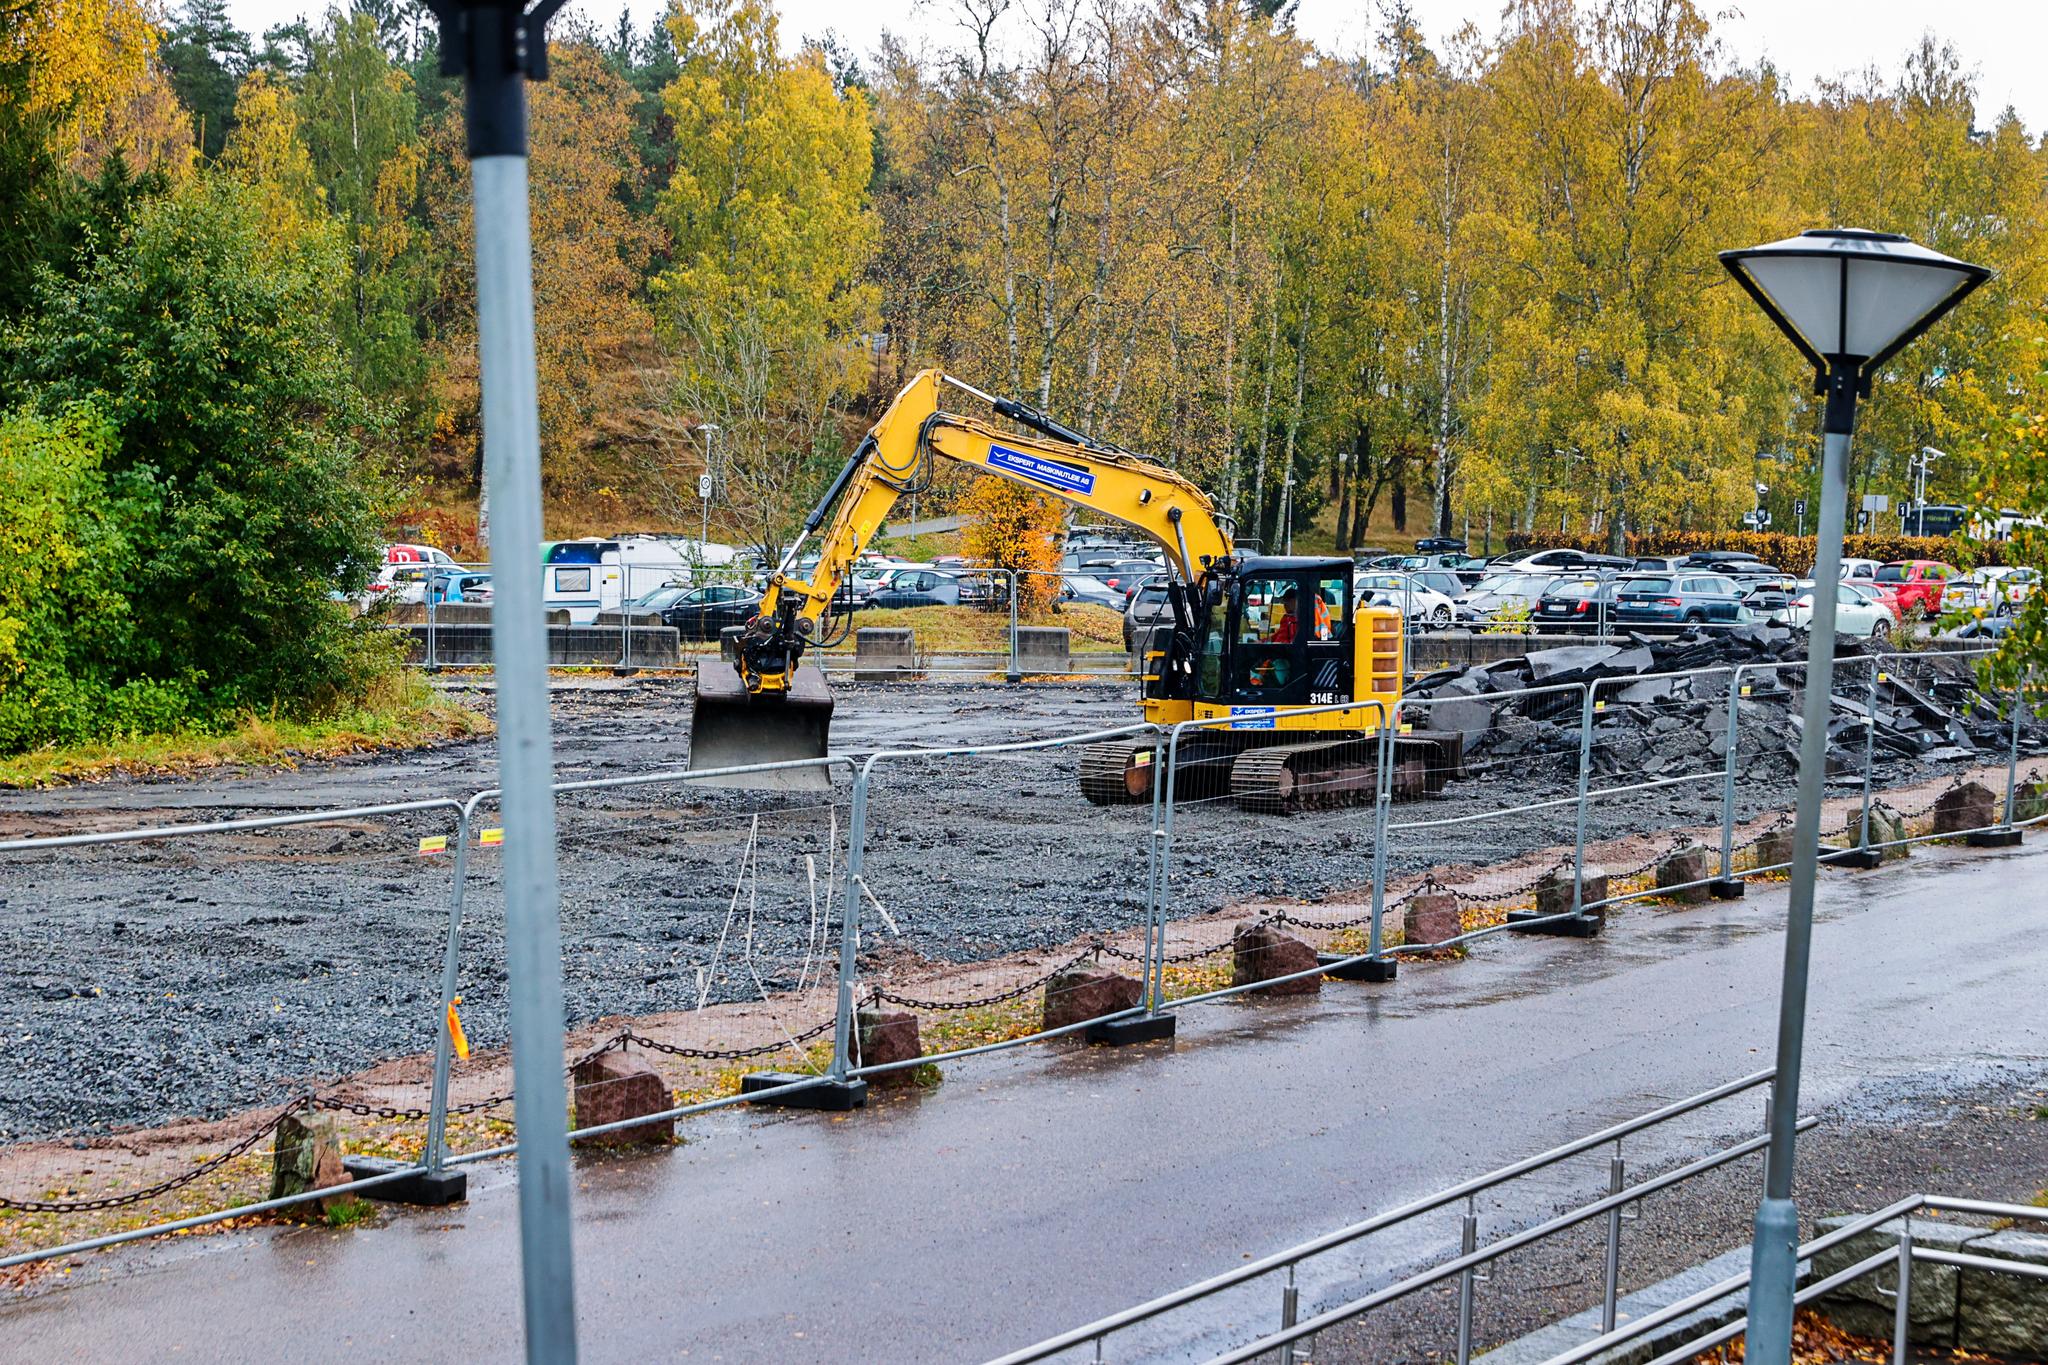 Denne uken startet byggingen av et nytt parkanlegg langs gangveien ned mot Sognsvann, mellom T-banestasjonen og kiosken. Målet er å gjøre ankomsten til Sognsvann tryggere og grønnere. 